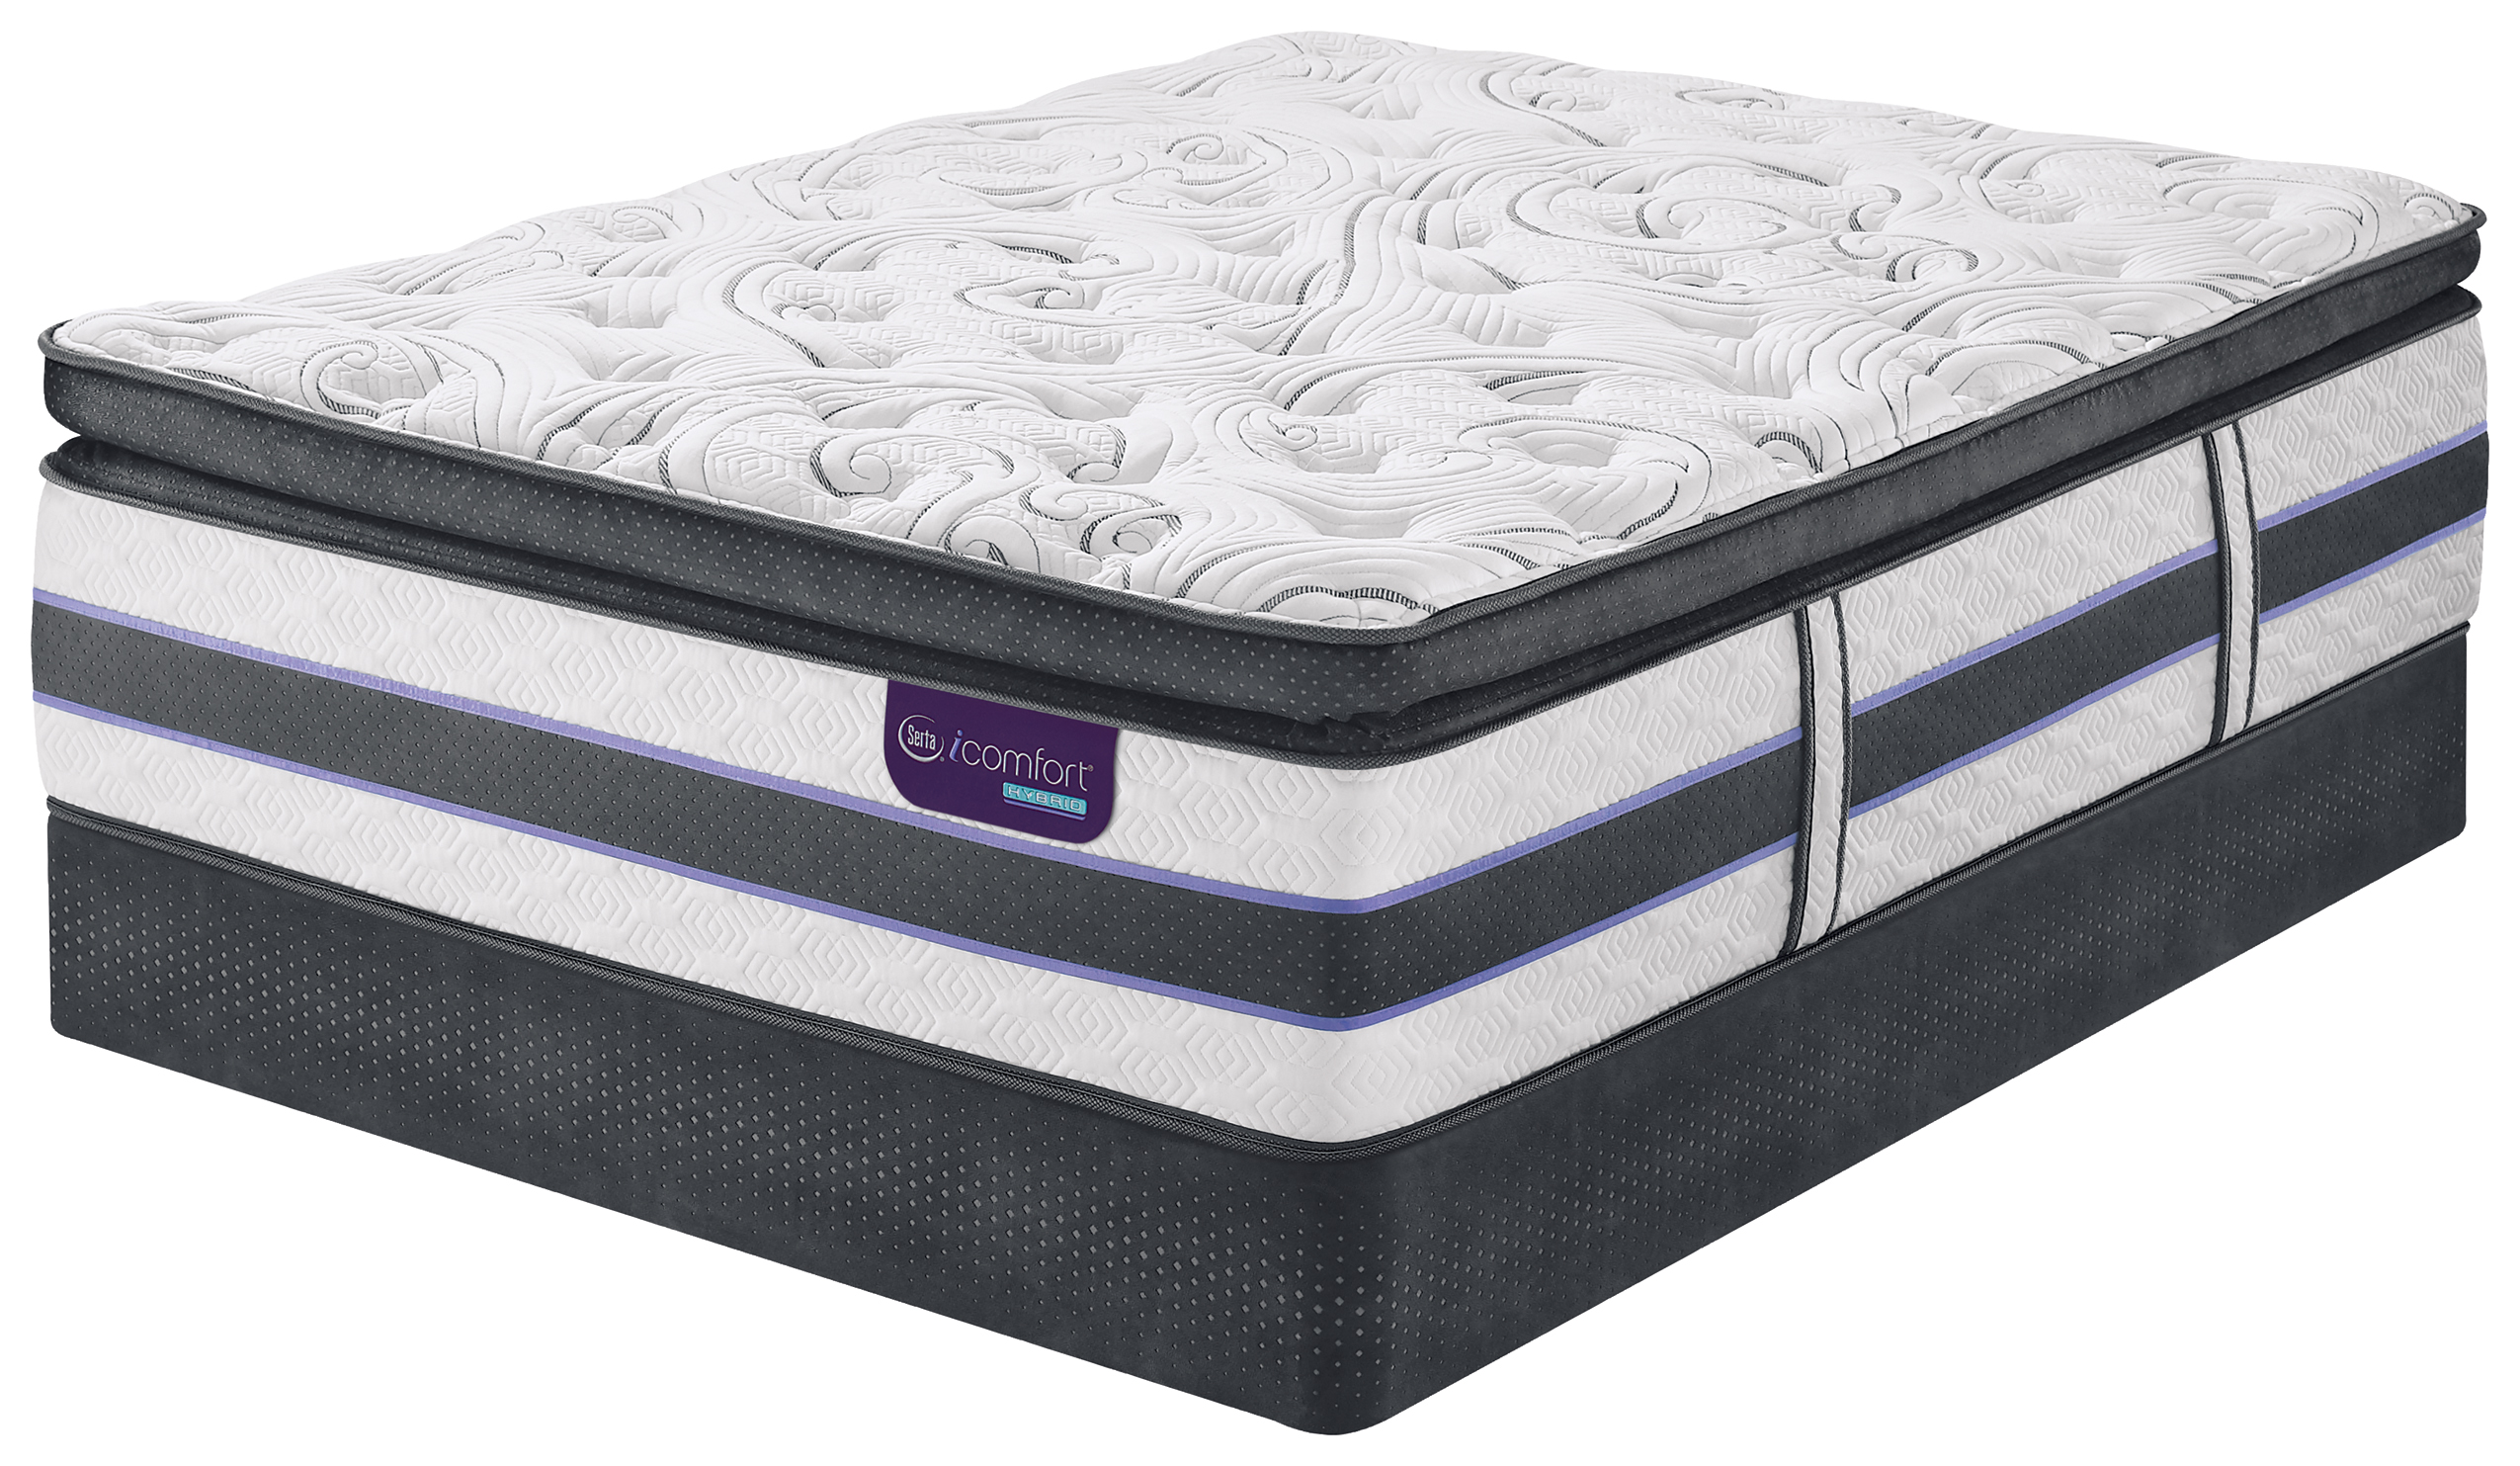 icomfort pillow top mattress